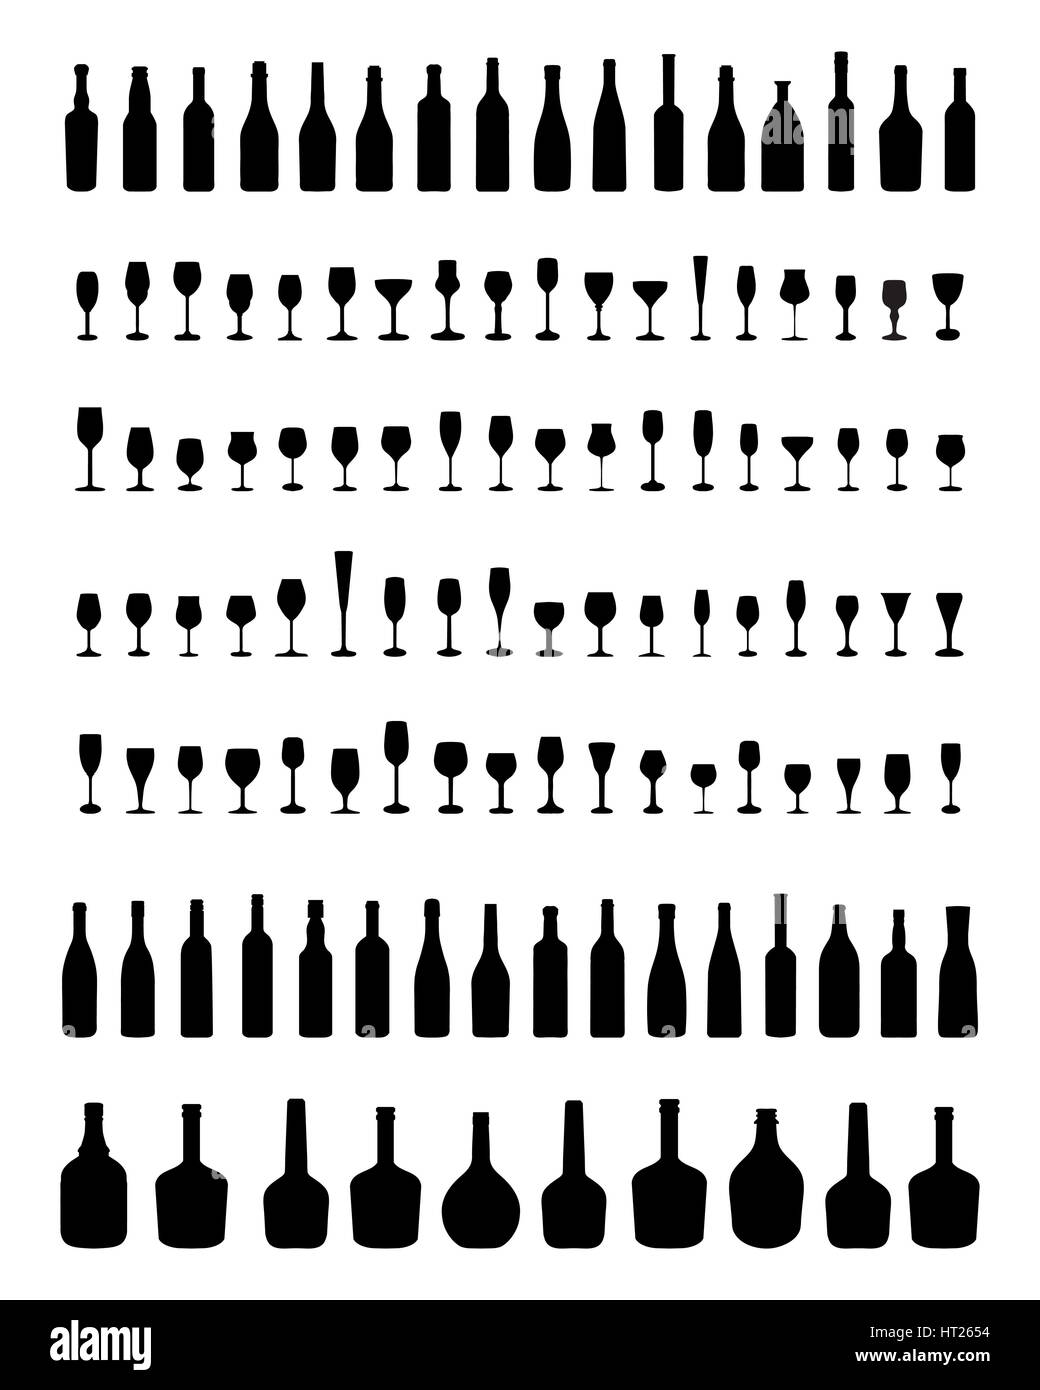 Silhouettes noires de bols, bouteilles et verres, vector Banque D'Images